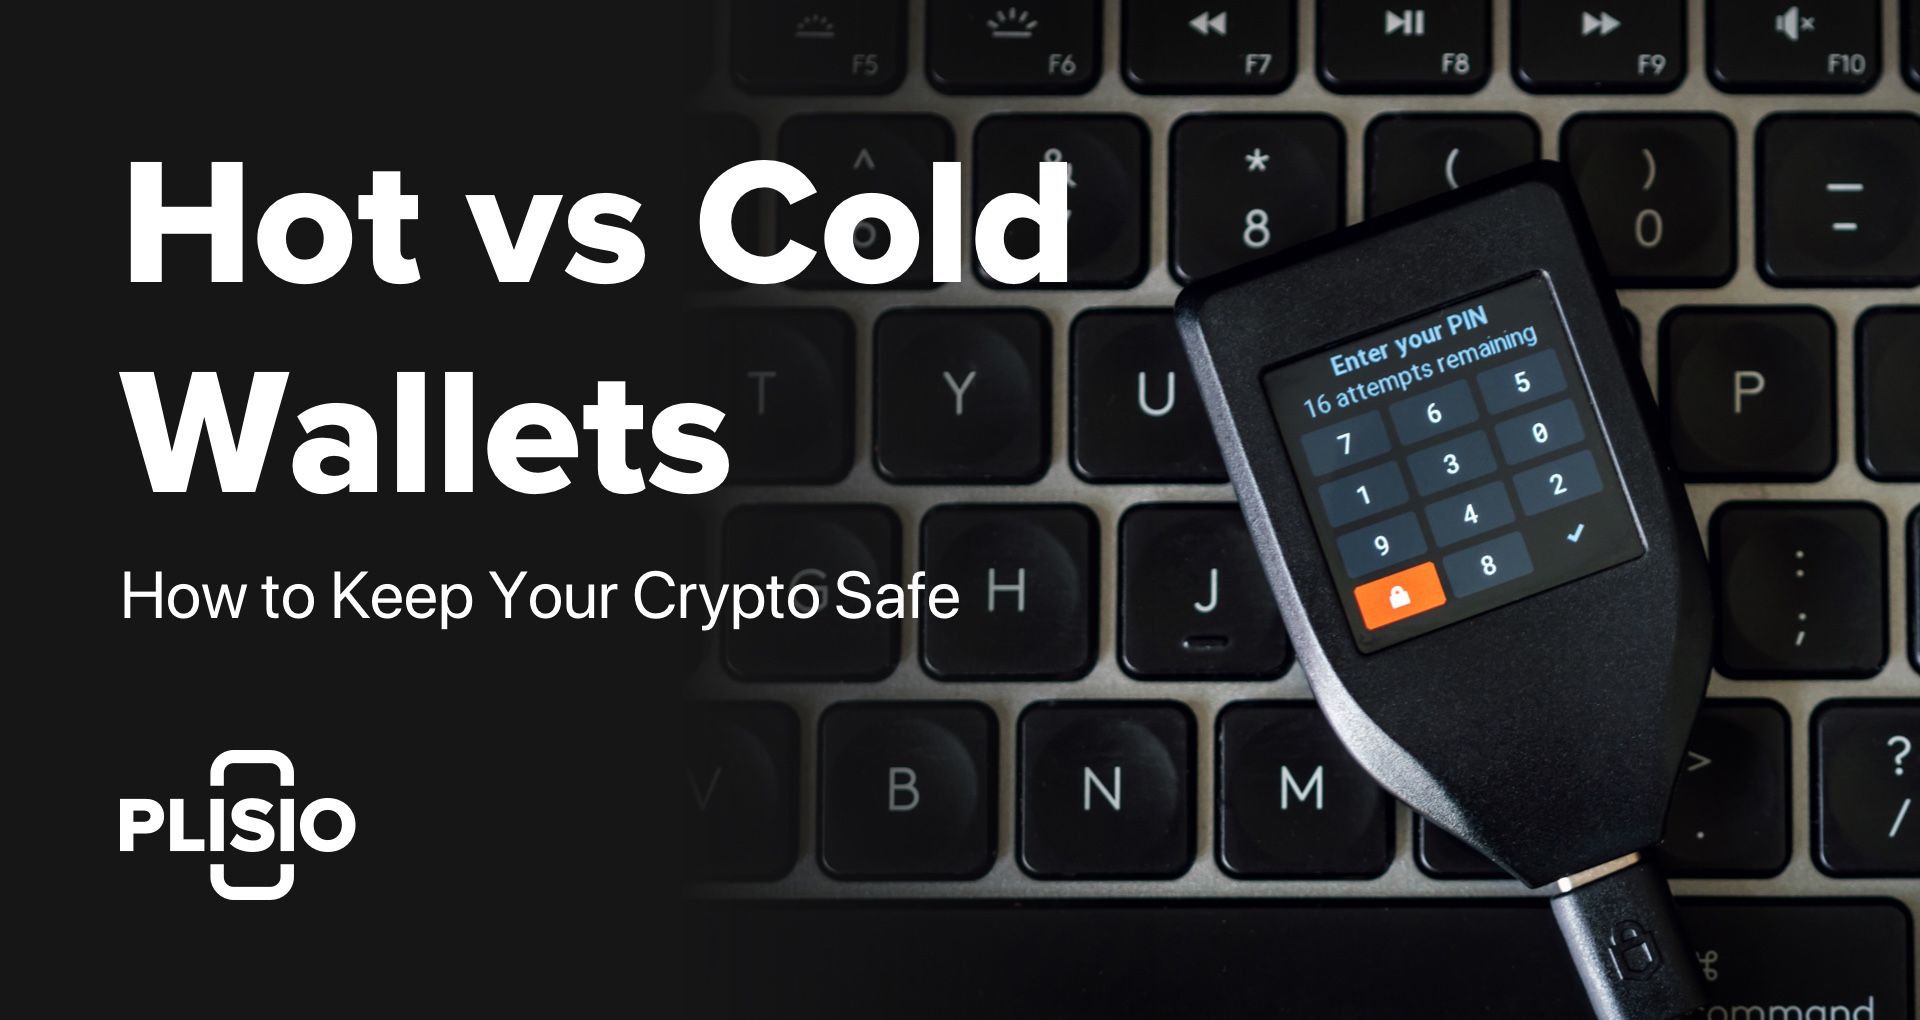 Portefeuilles chauds contre portefeuilles froids : comment protéger votre crypto en toute sécurité